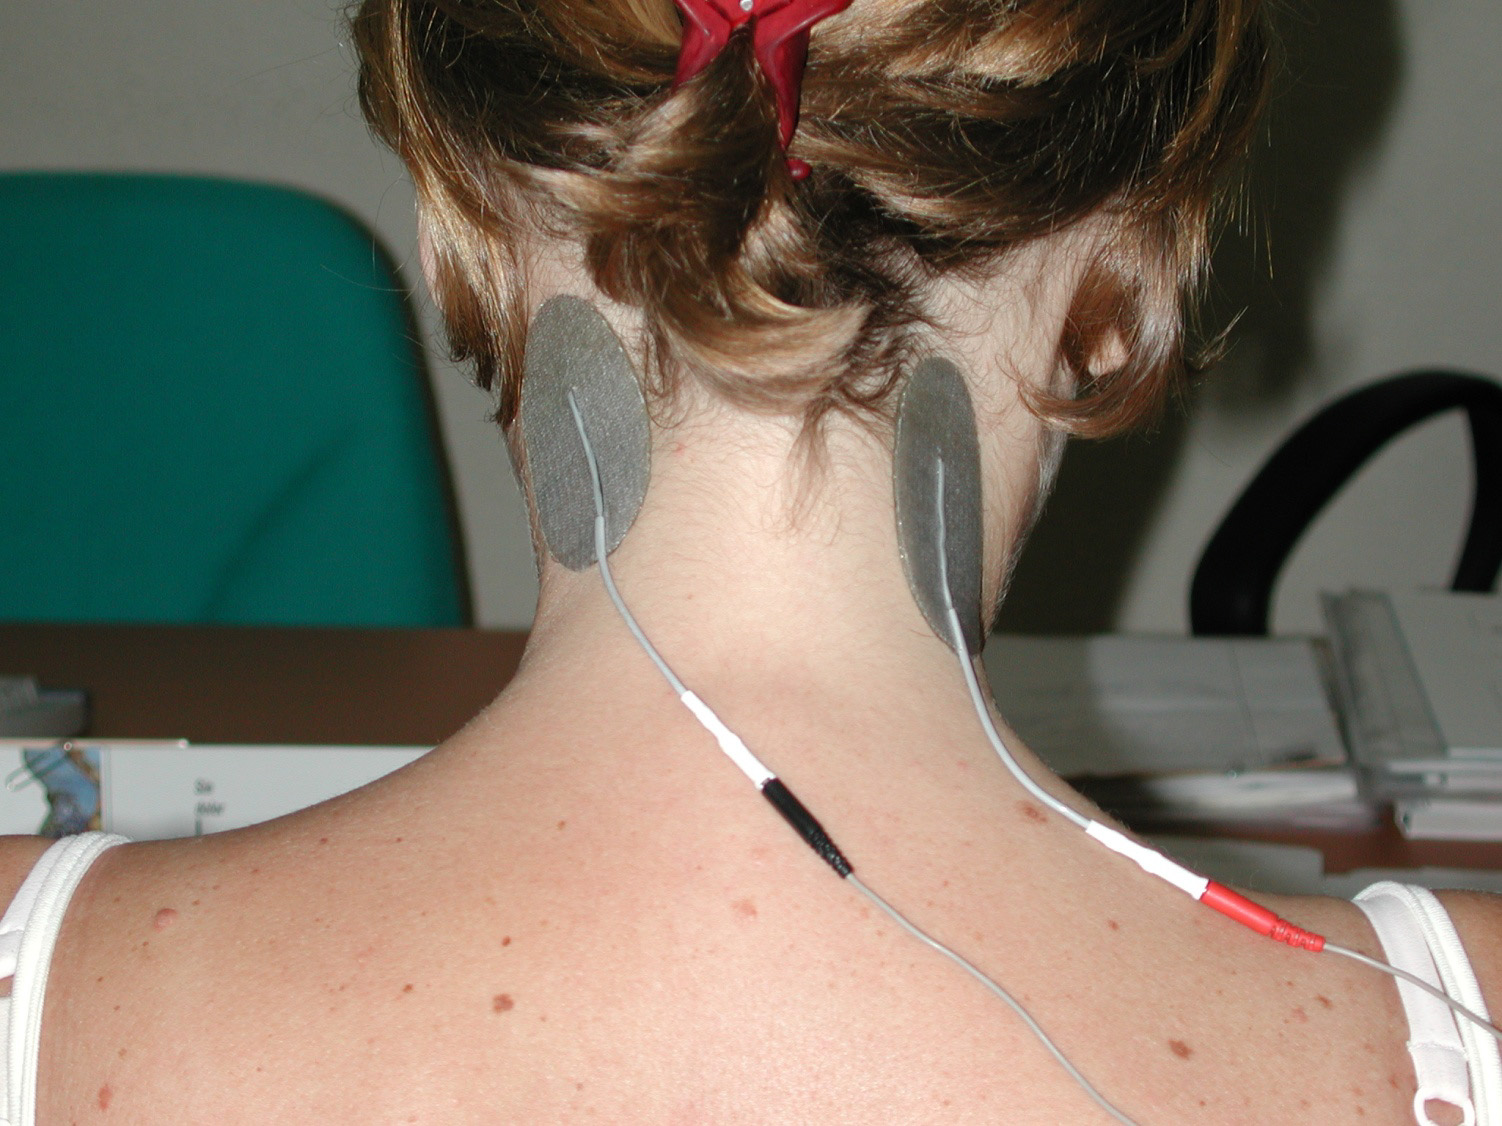 Colocación electrodos TENS para dolor de antebrazo  Electroestimulación  TENS para terapia del dolor 